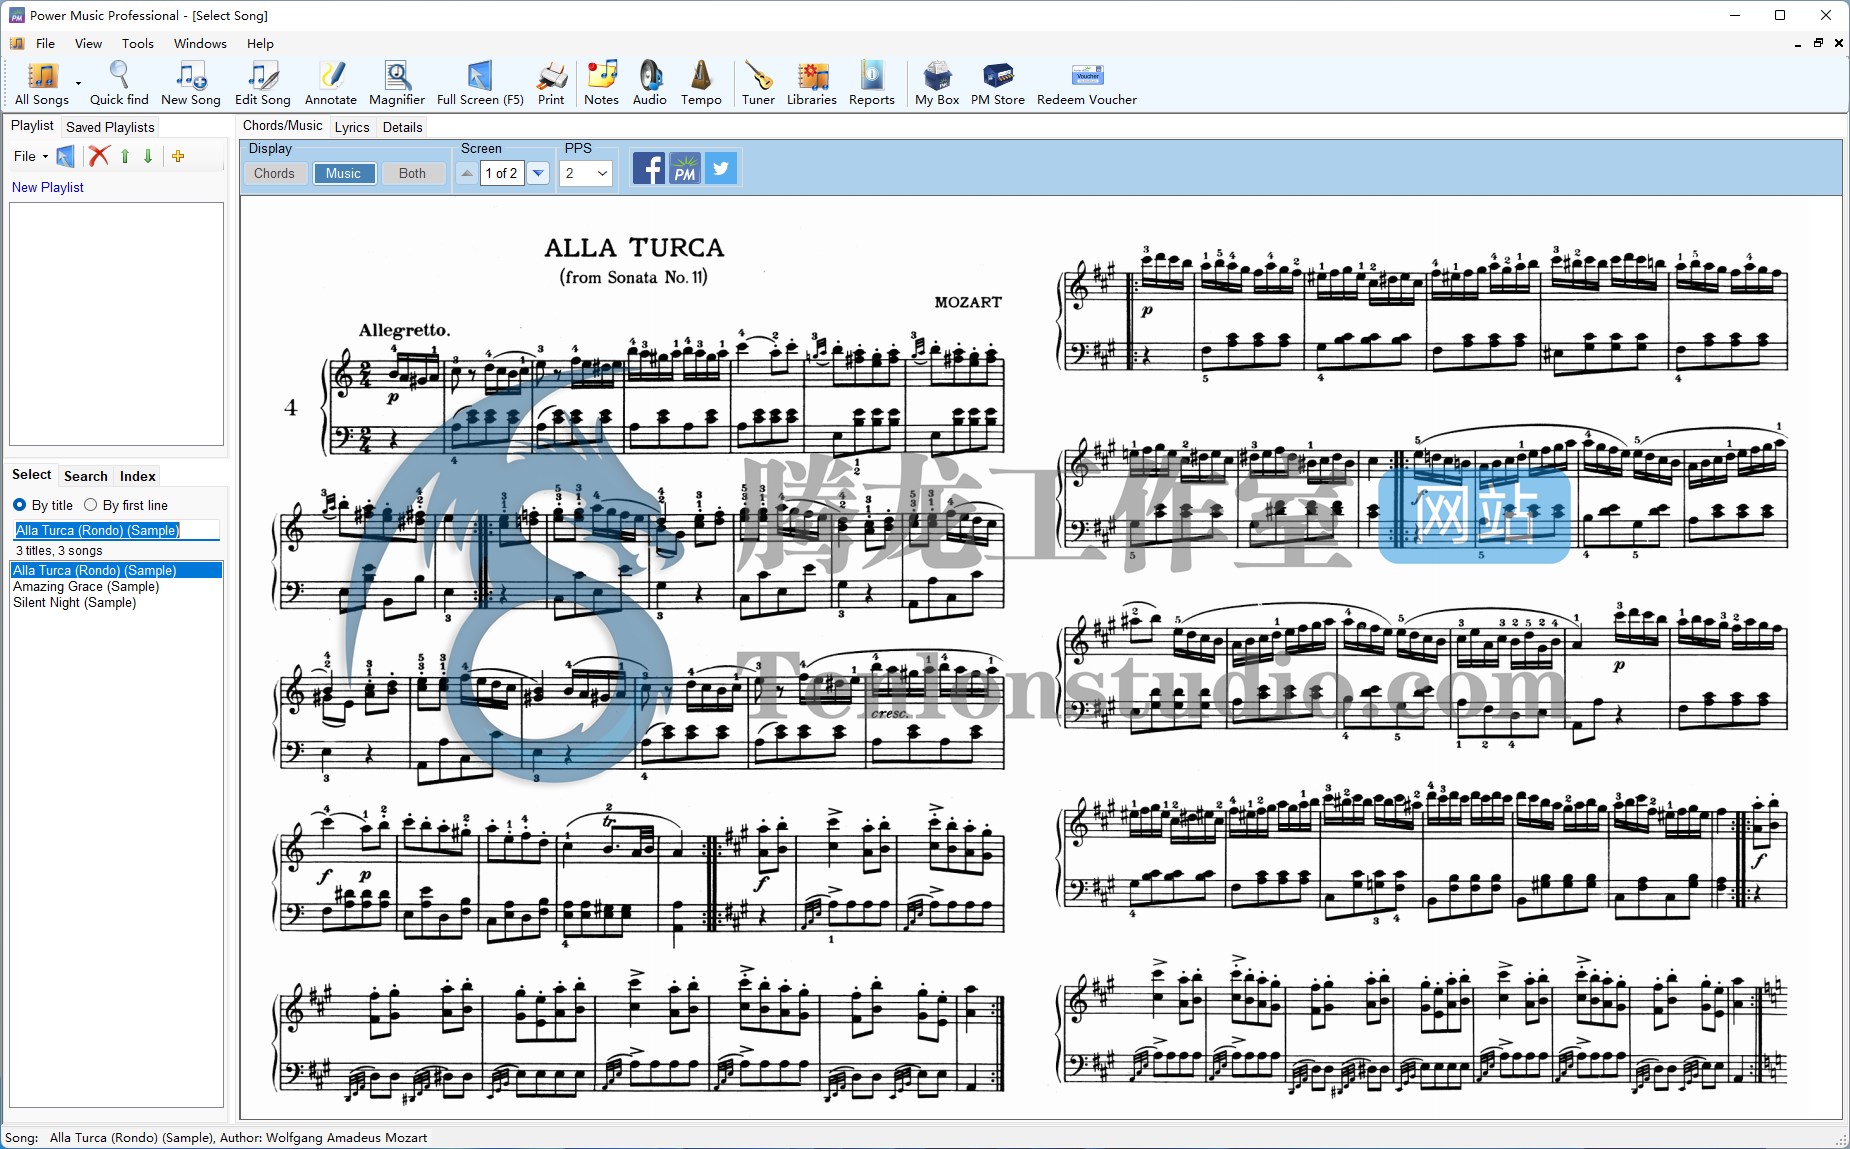 乐谱管理软件 Power Music Professional v5.2.2.1 破解版插图